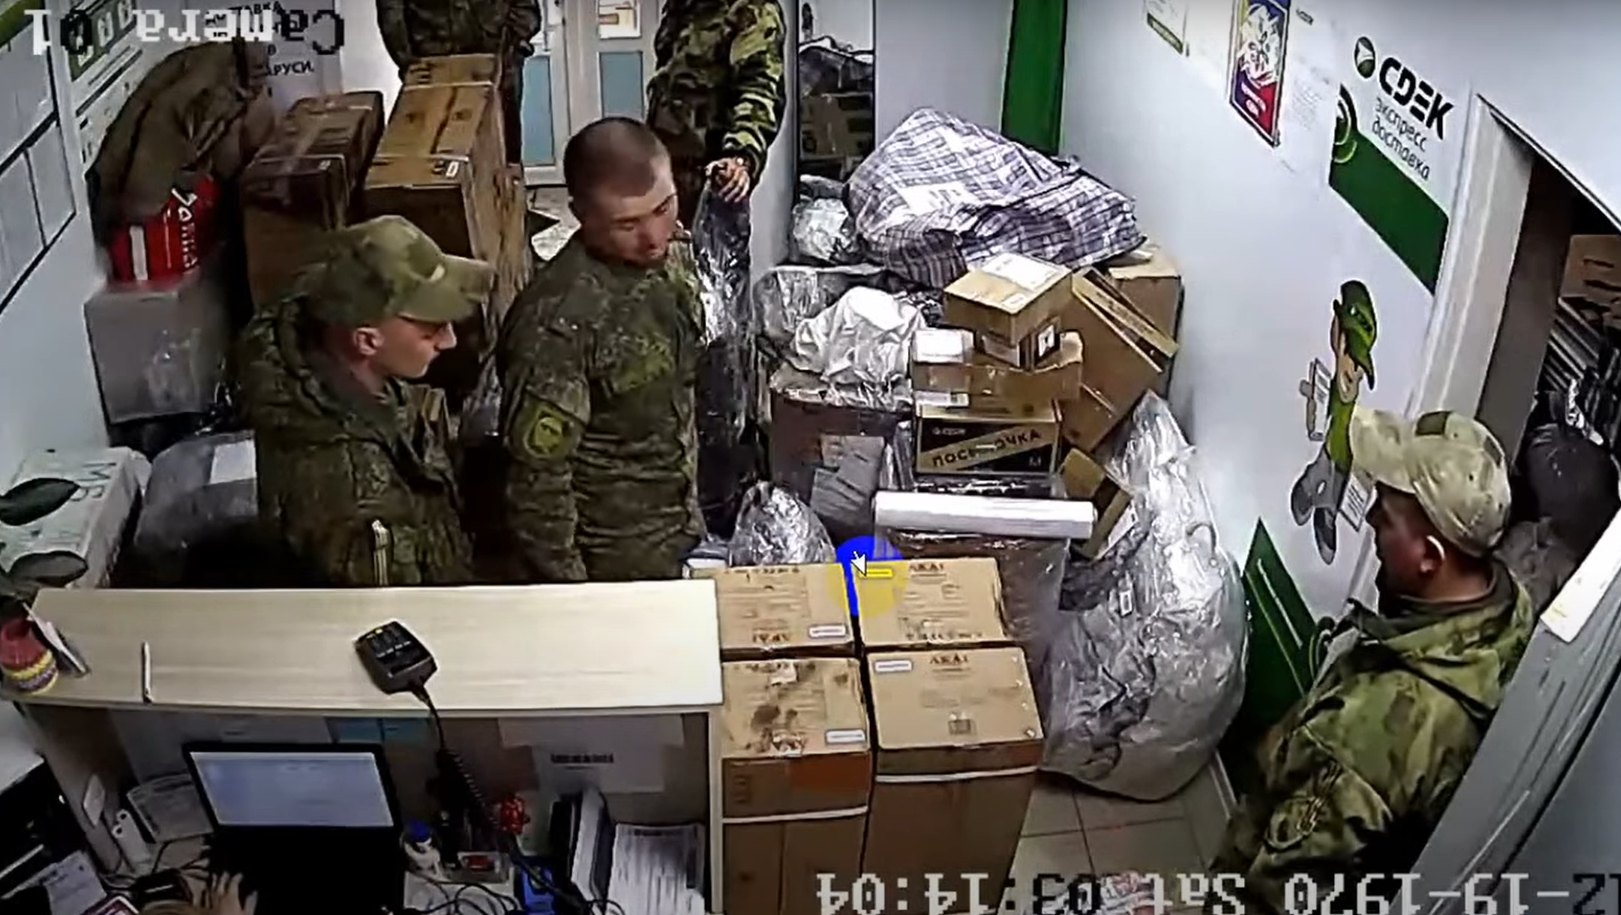 Появилось видео как солдаты отправляют вещи через отделение ...